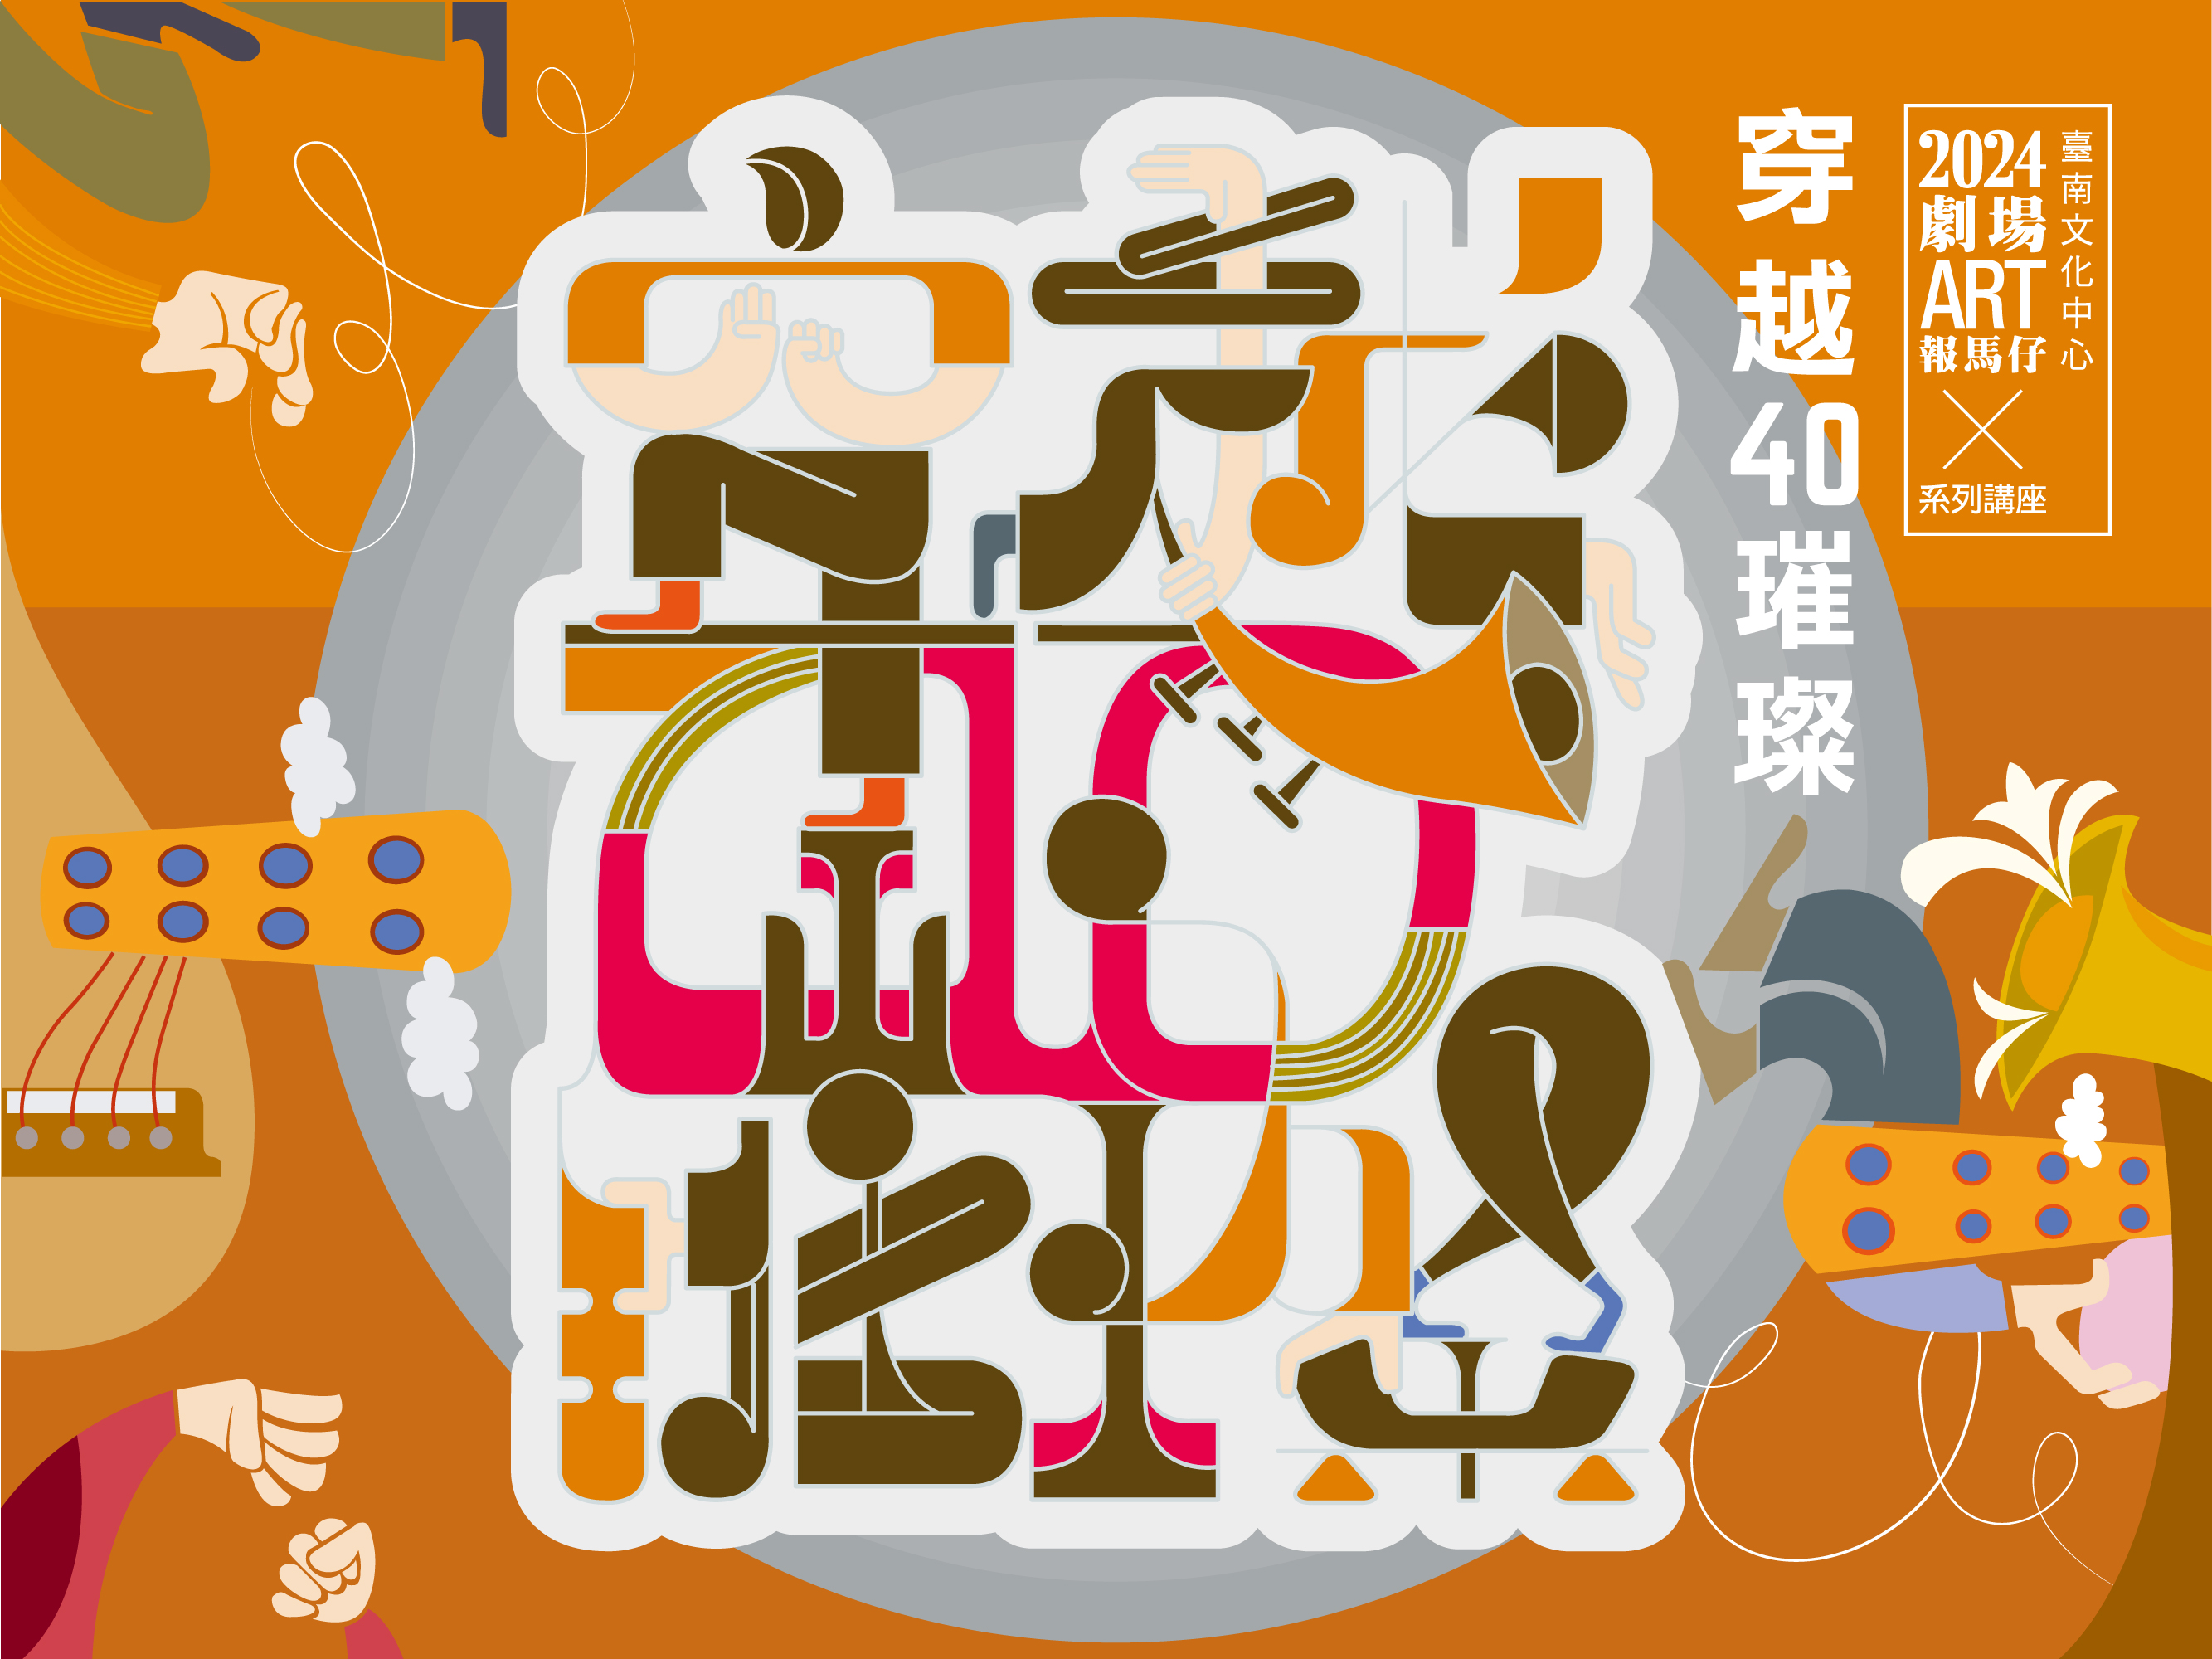 臺南文化中心2024年劇場ART報馬仔系列講座－穿越40璀璨